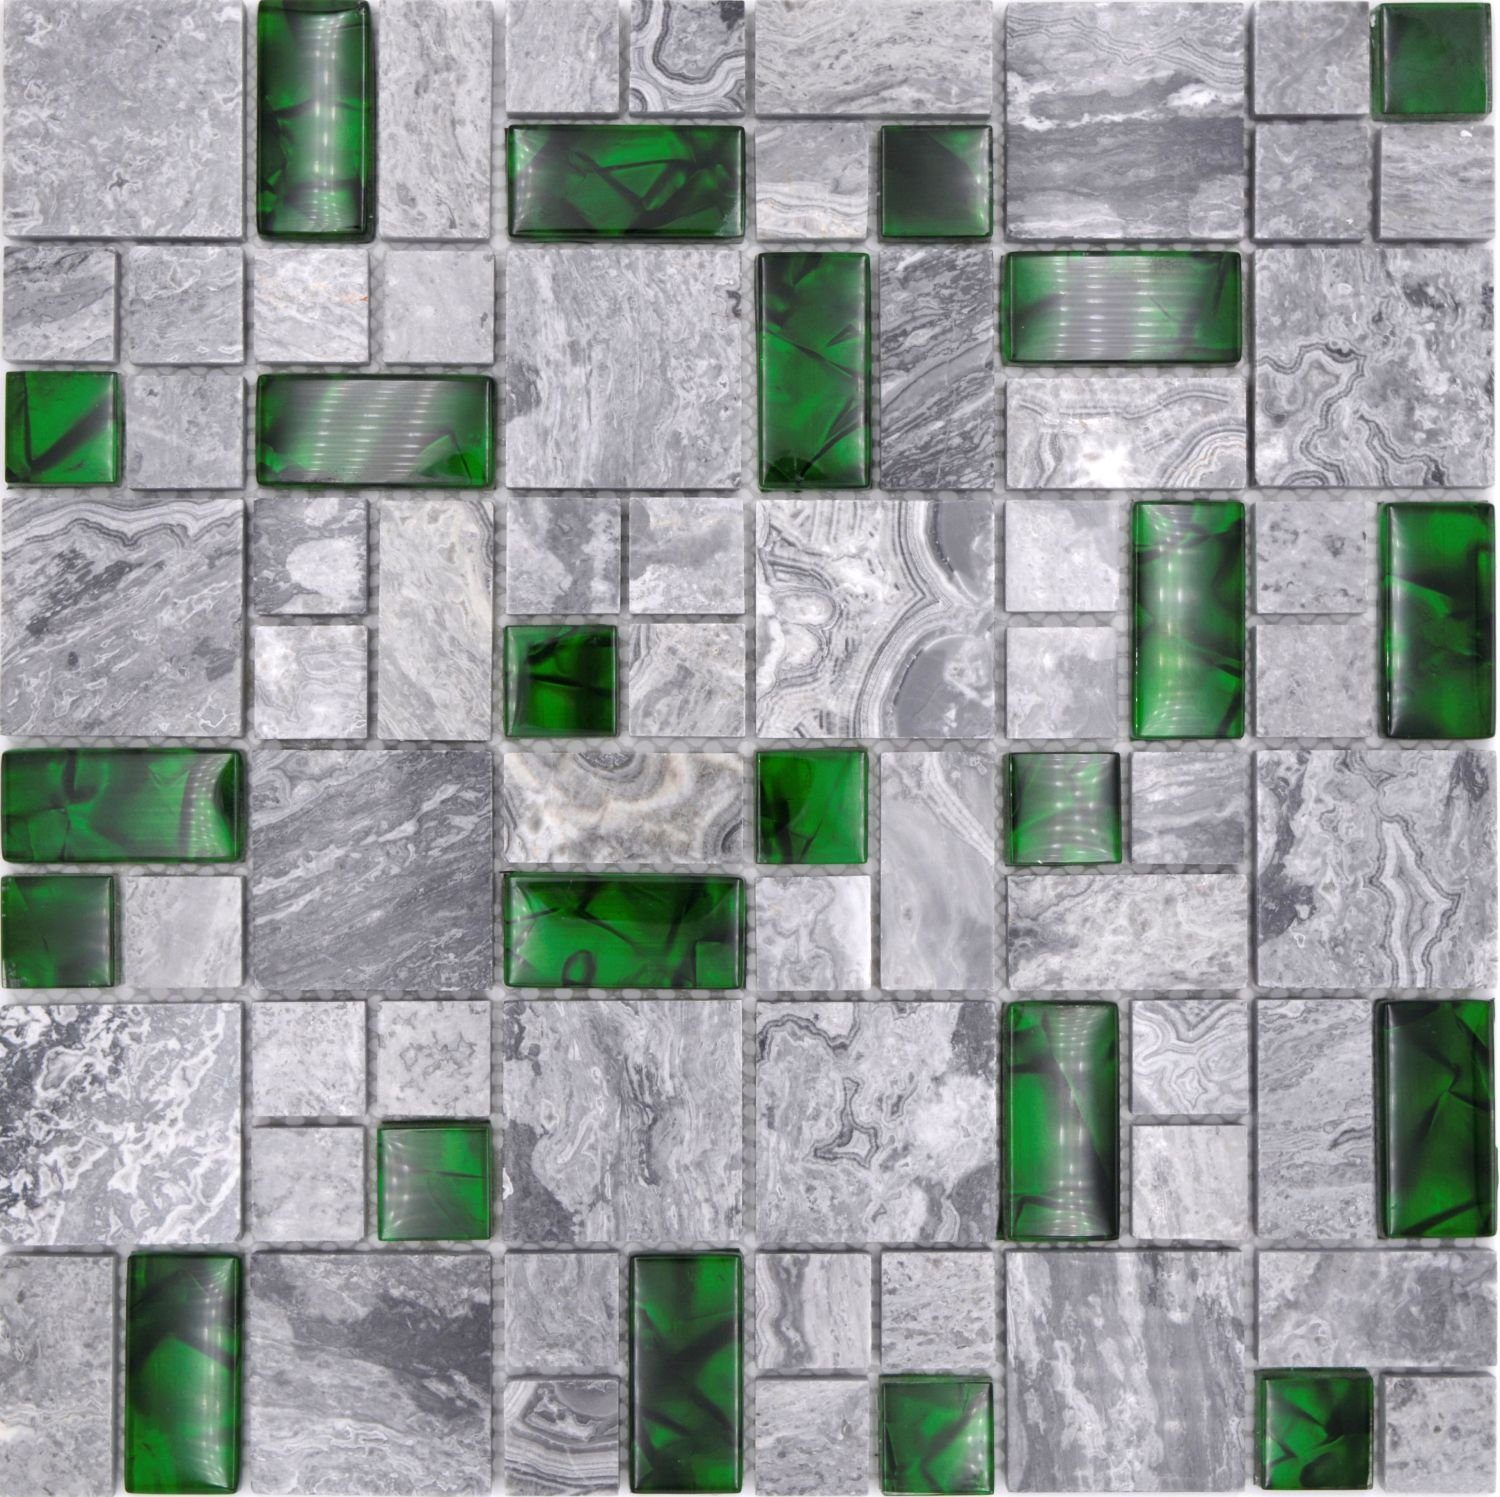 Mosani Mosaikfliesen 0,9m² Glasmosaik Naturstein Mosaikfliesen grau mit grün glänzend, Set, 10-teilig, Dekorative Wandverkleidung